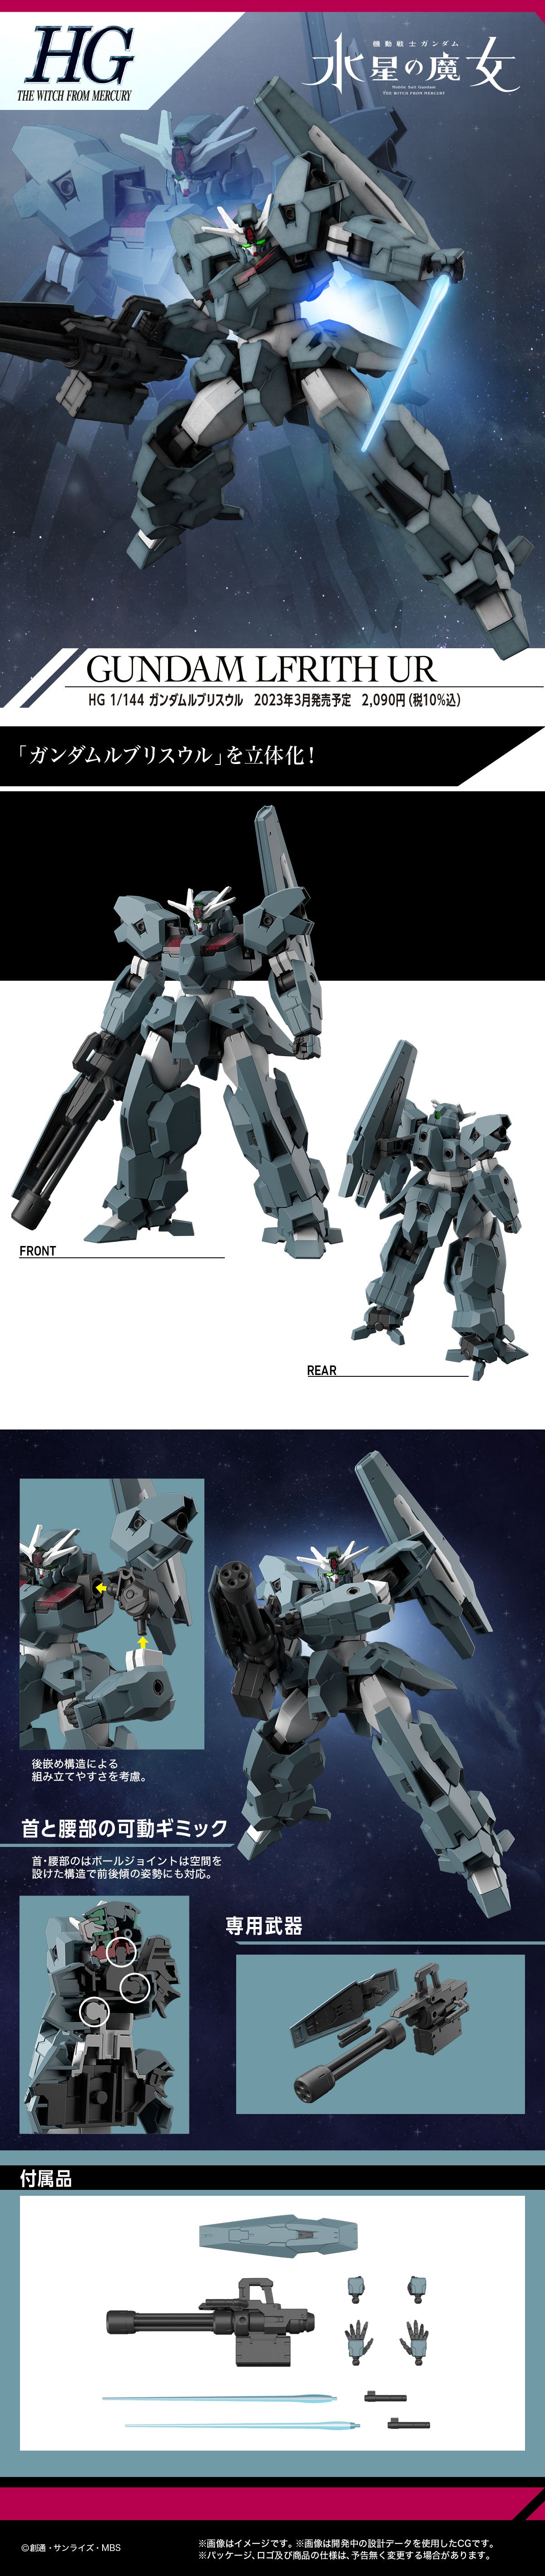 BAS2620606 Bandai HG Gundam Lfrith Ur Model Kit